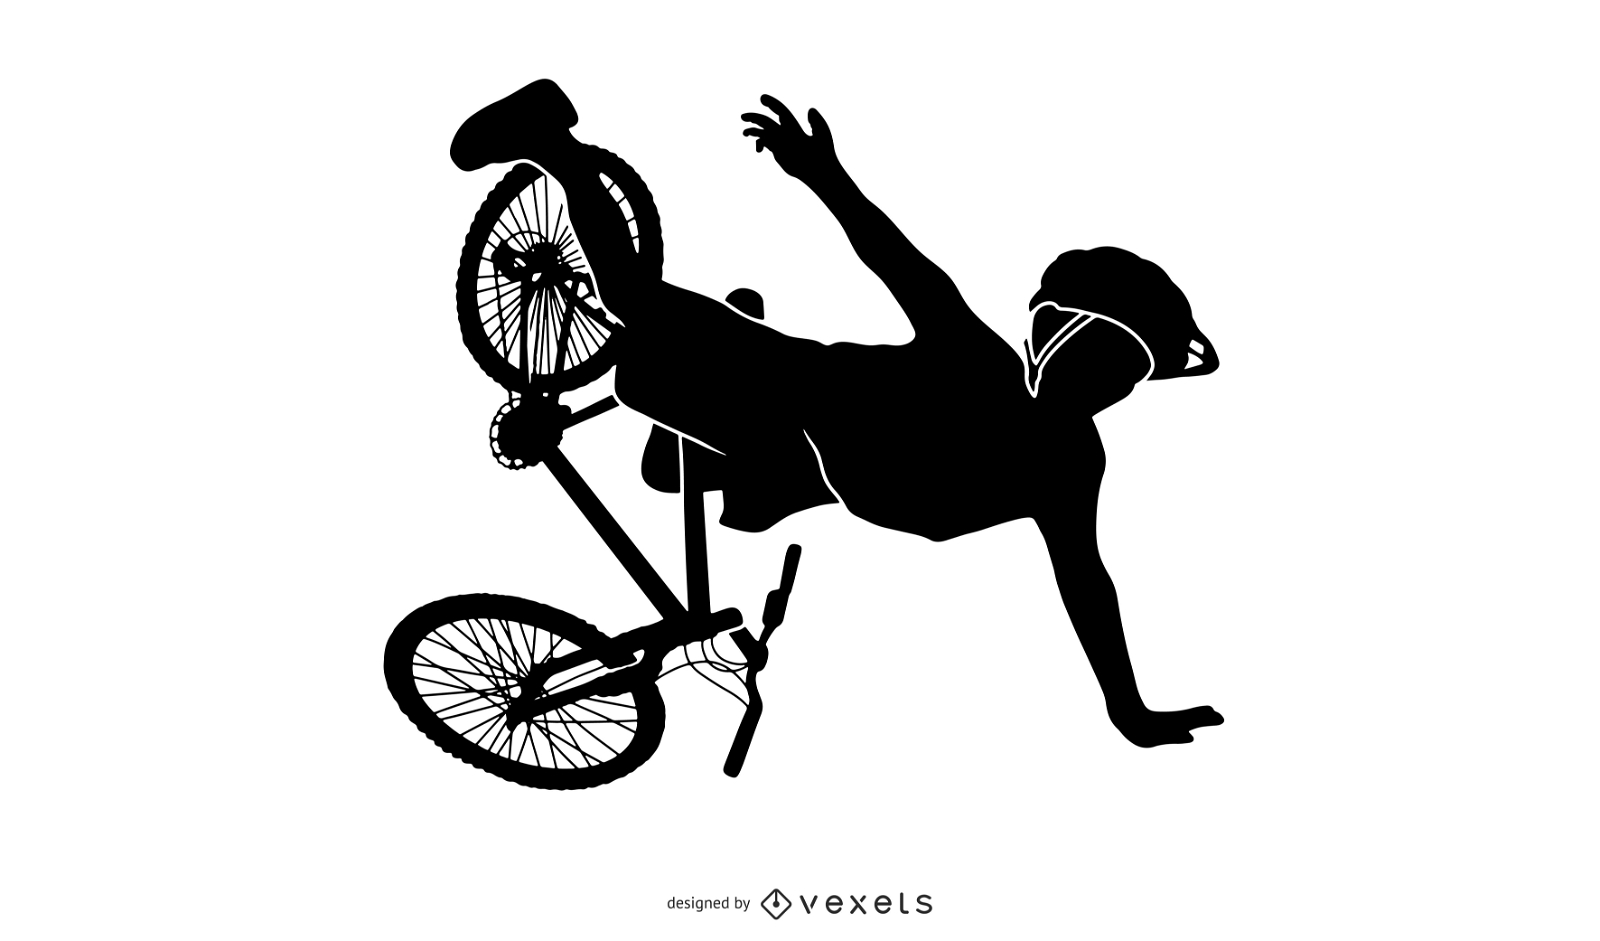 Desenho de silhueta de motociclista caindo